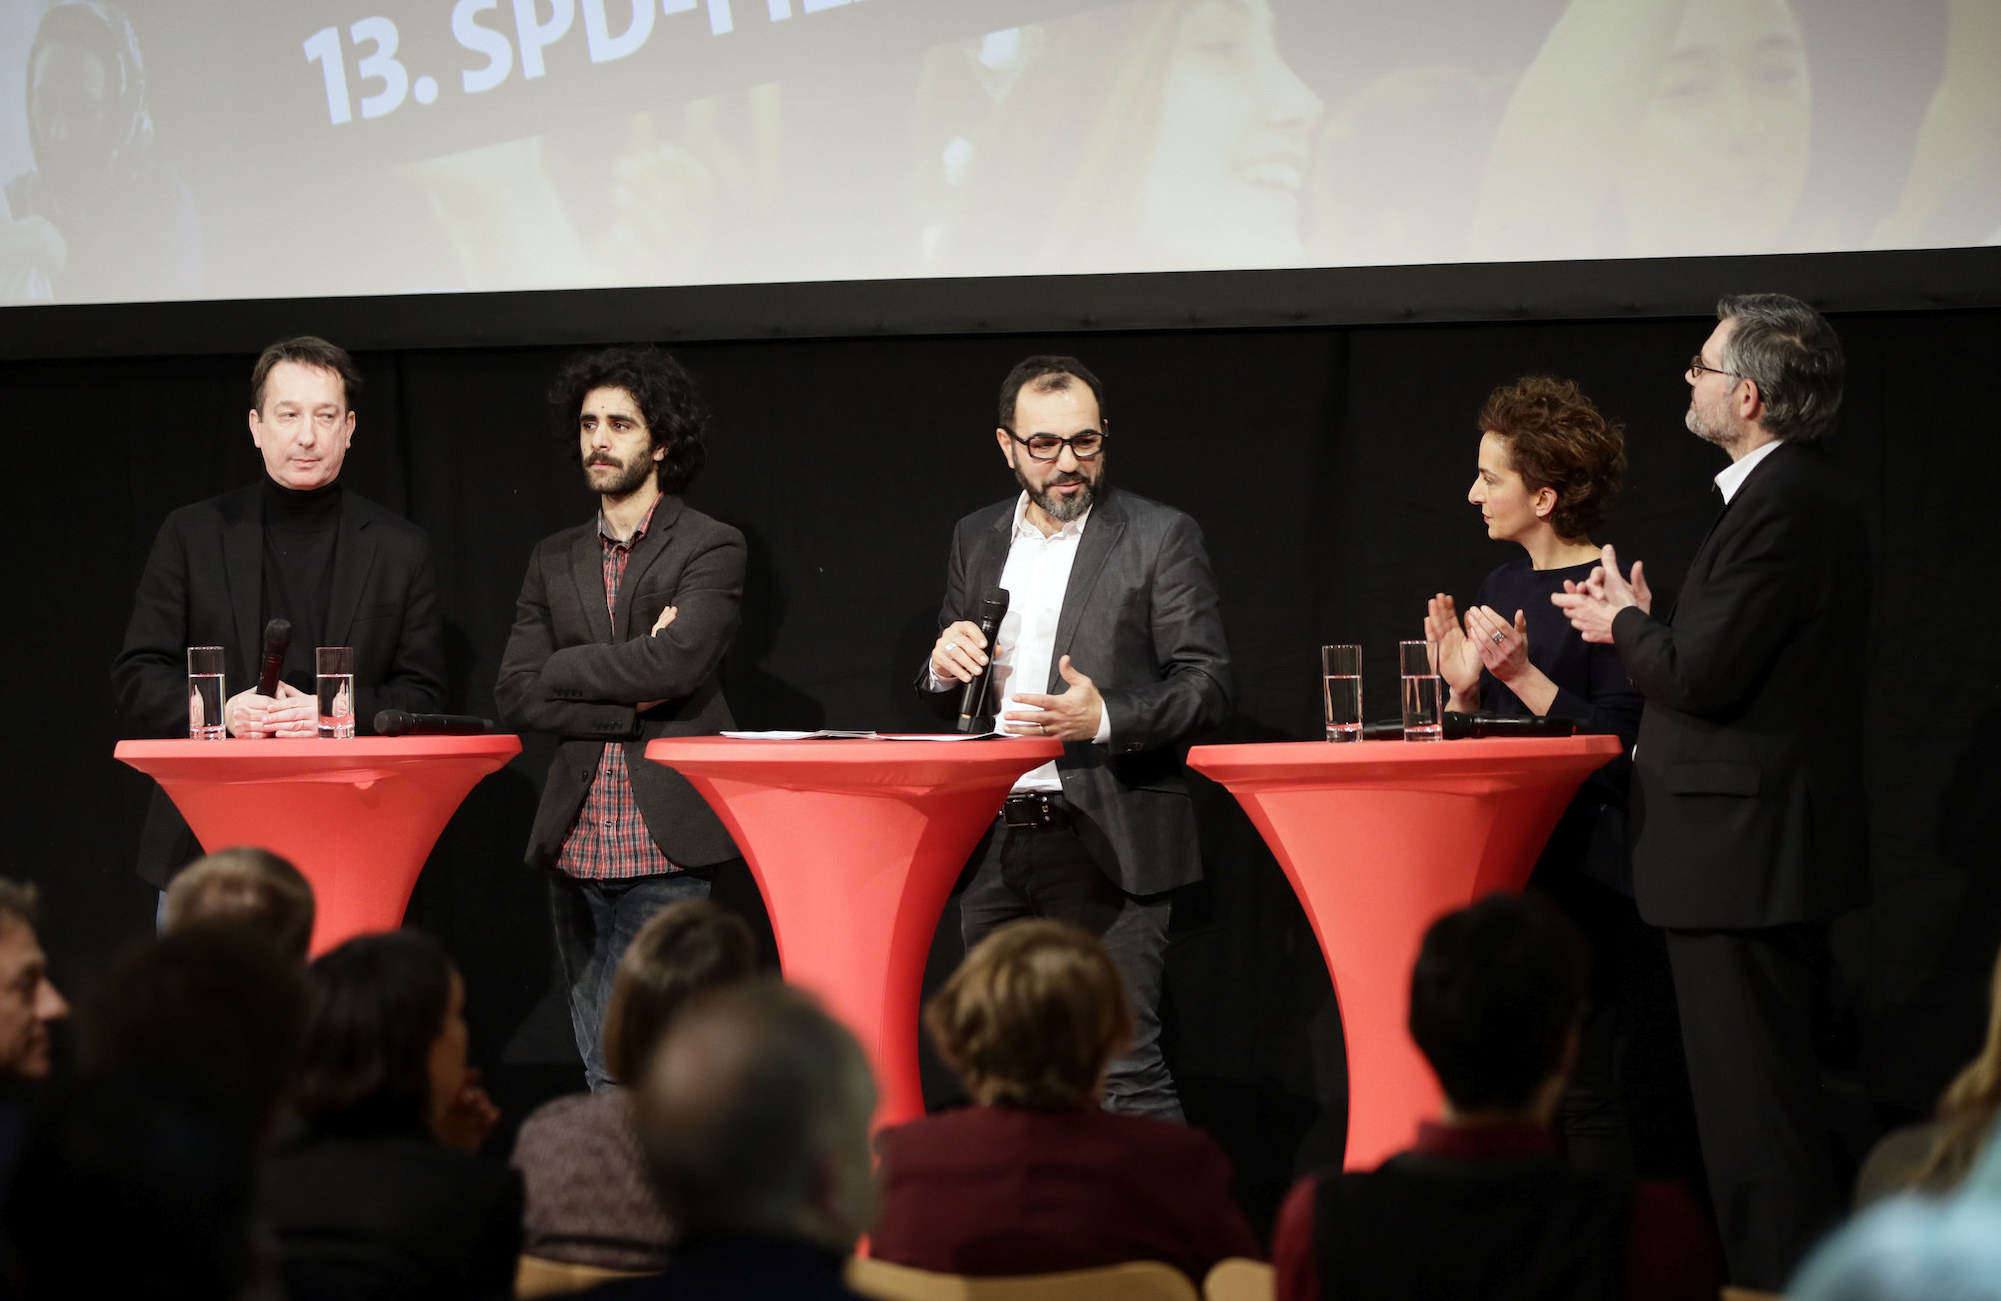 Foto: Podiumsdiskussion beim 13. SPD-Filmabend anlässlich der Berlinale 2016